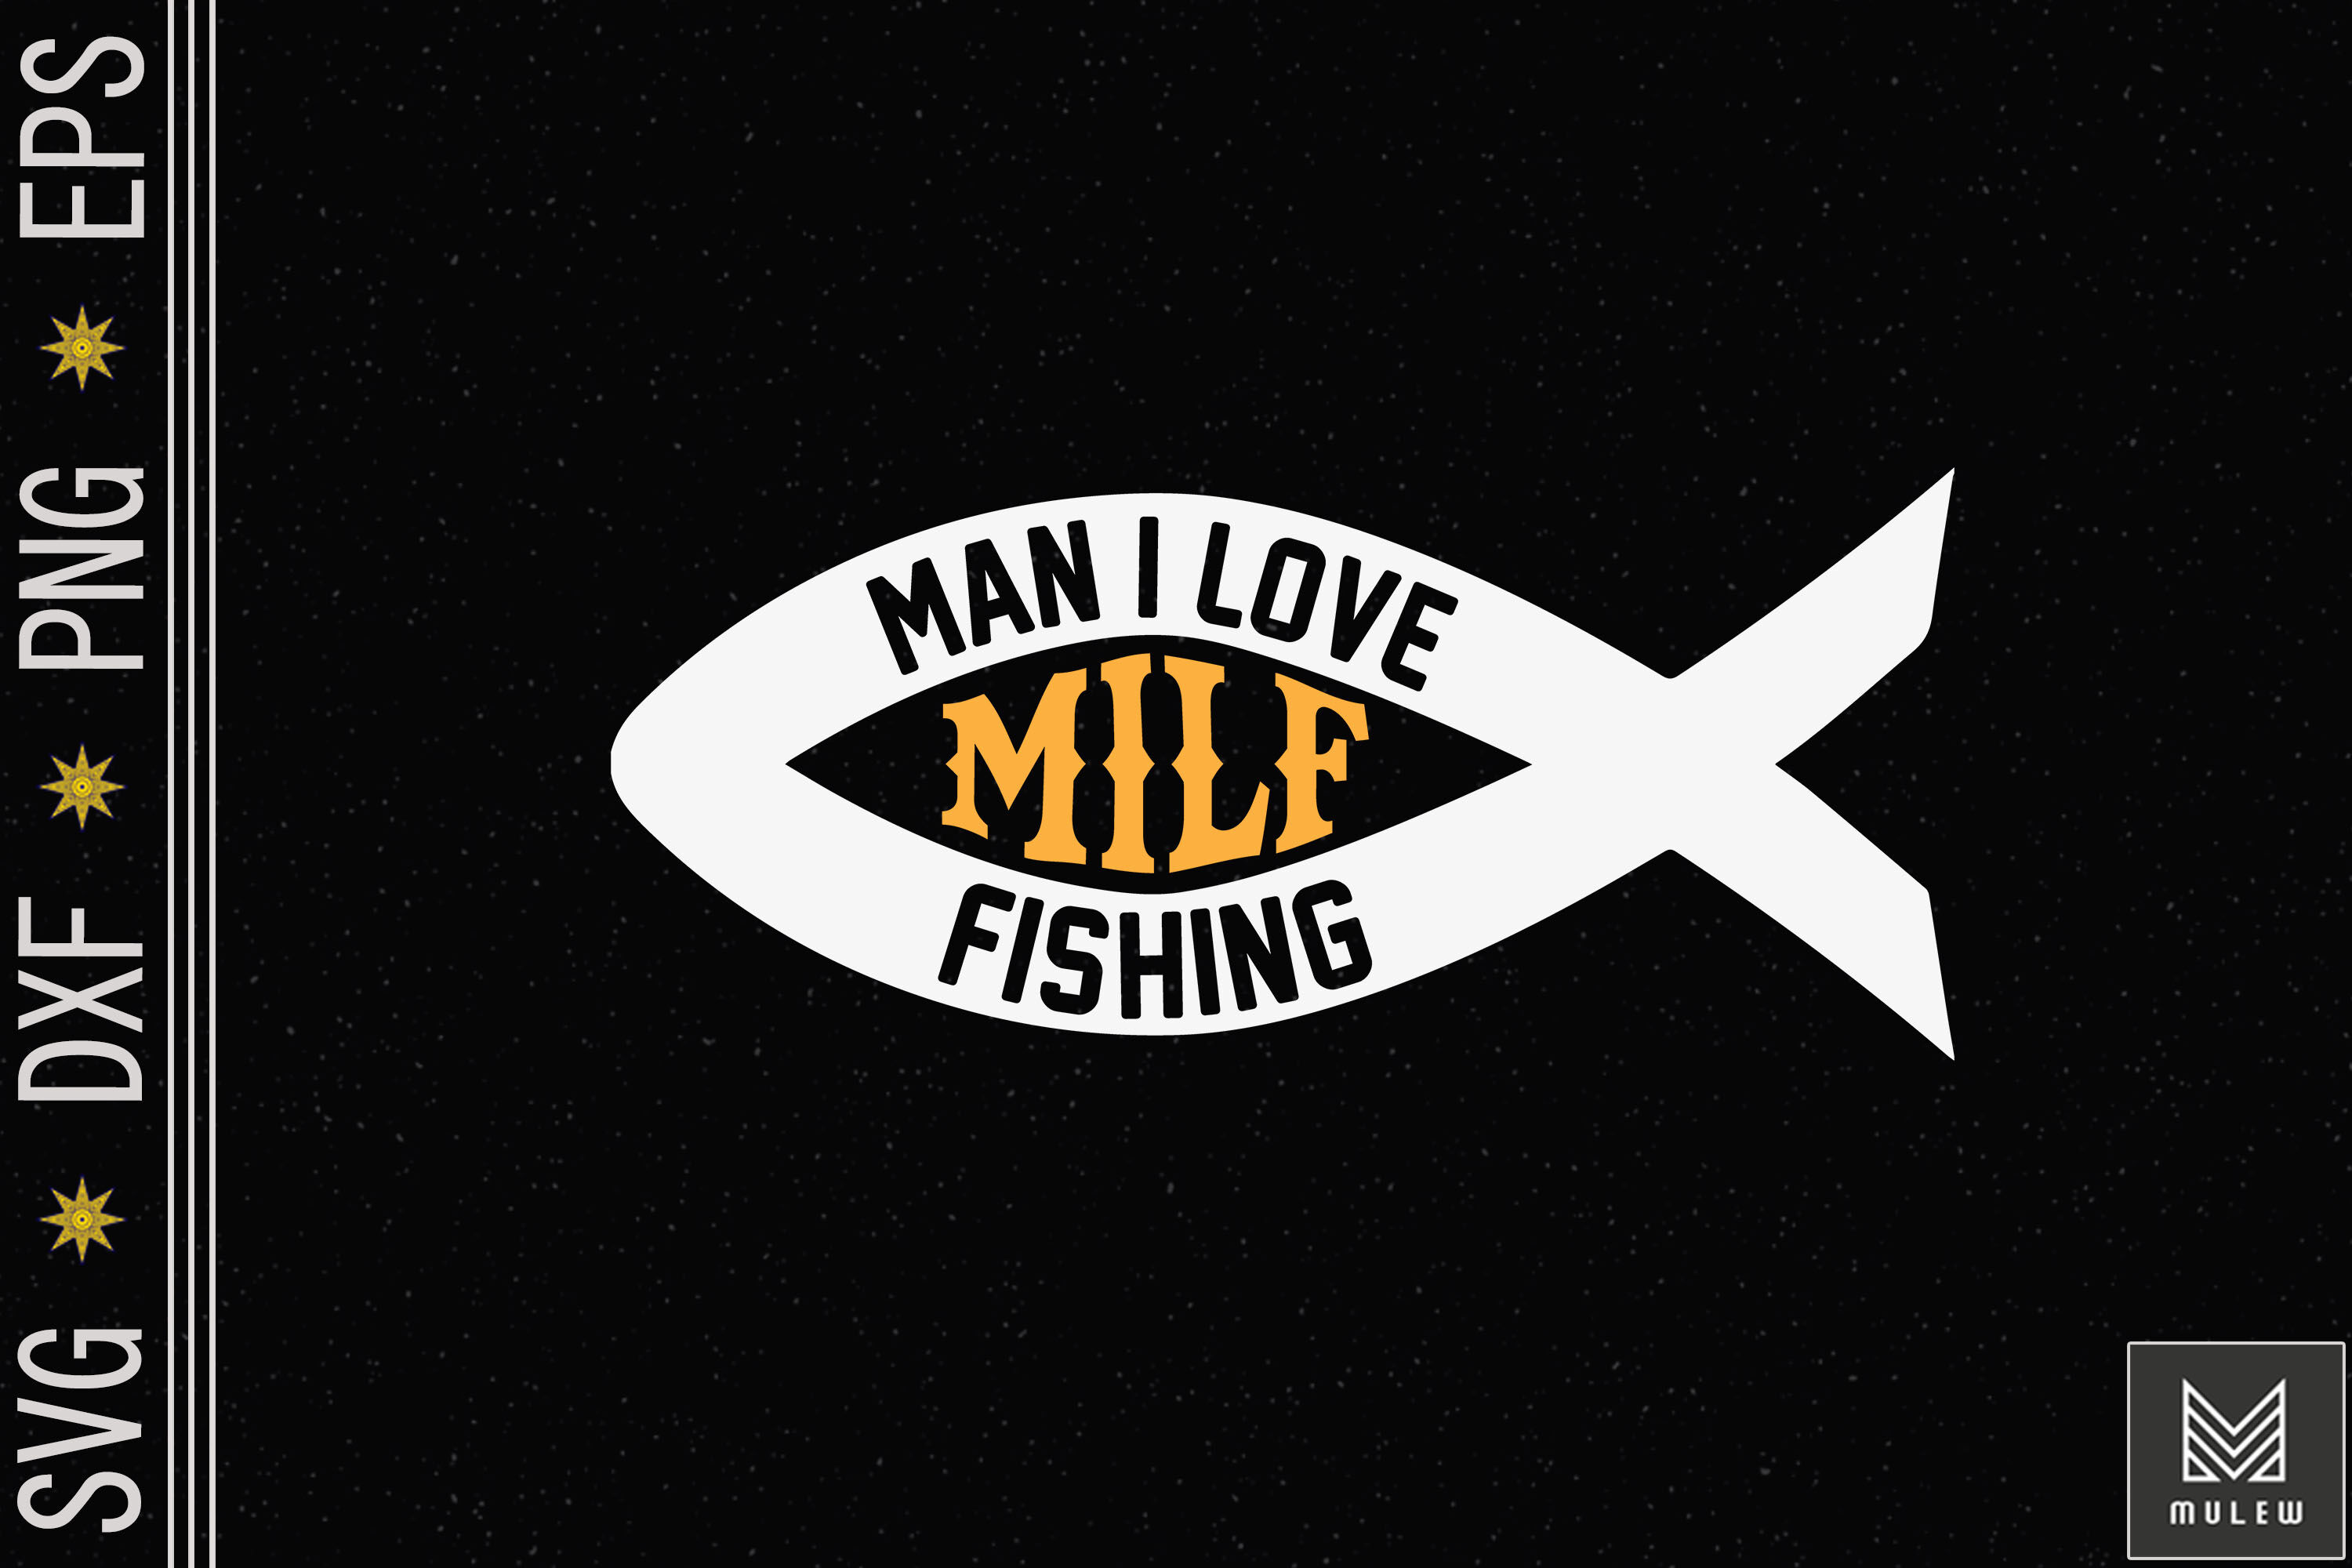 MILF Man I Love Fishing Funny - Fishing t shirts design, Vector